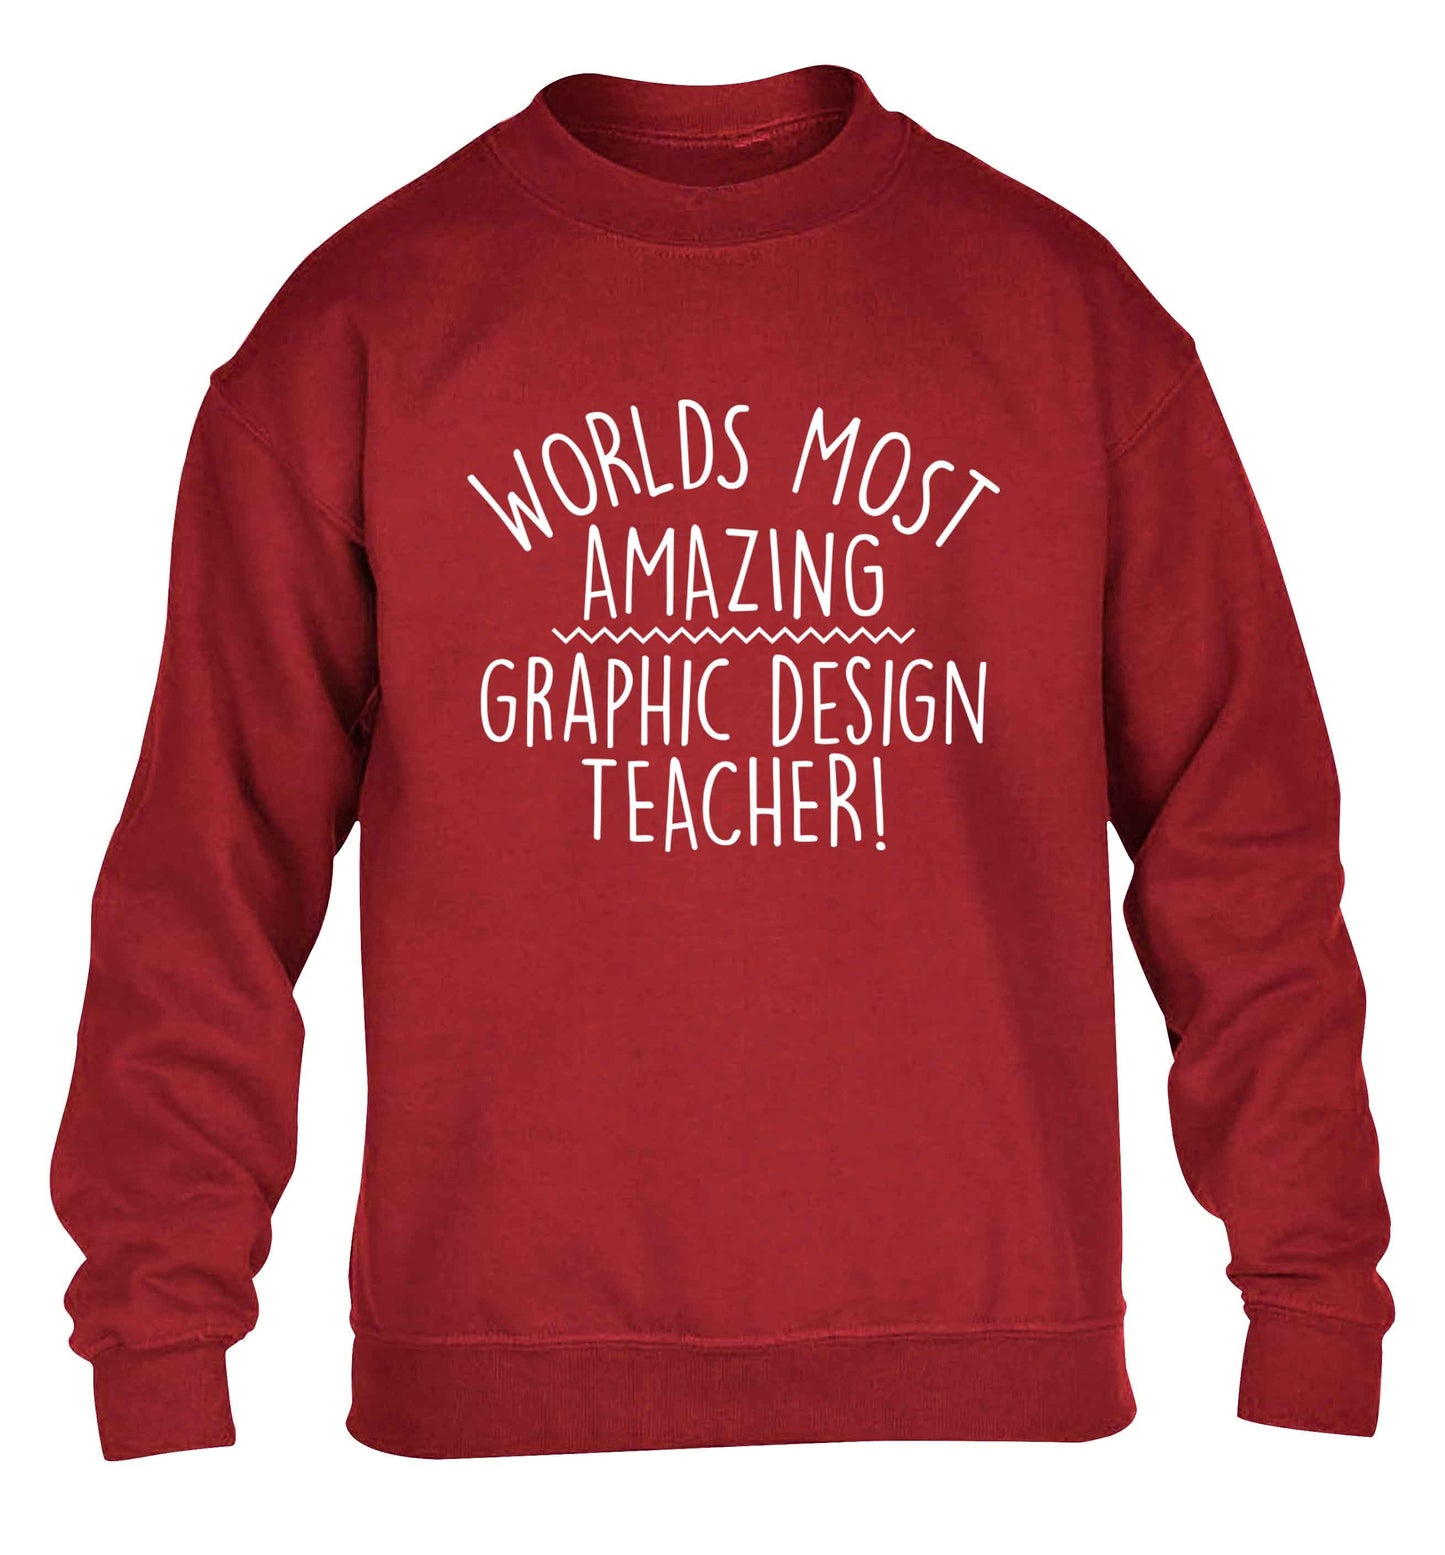 Worlds most amazing graphic design teacher children's grey sweater 12-13 Years